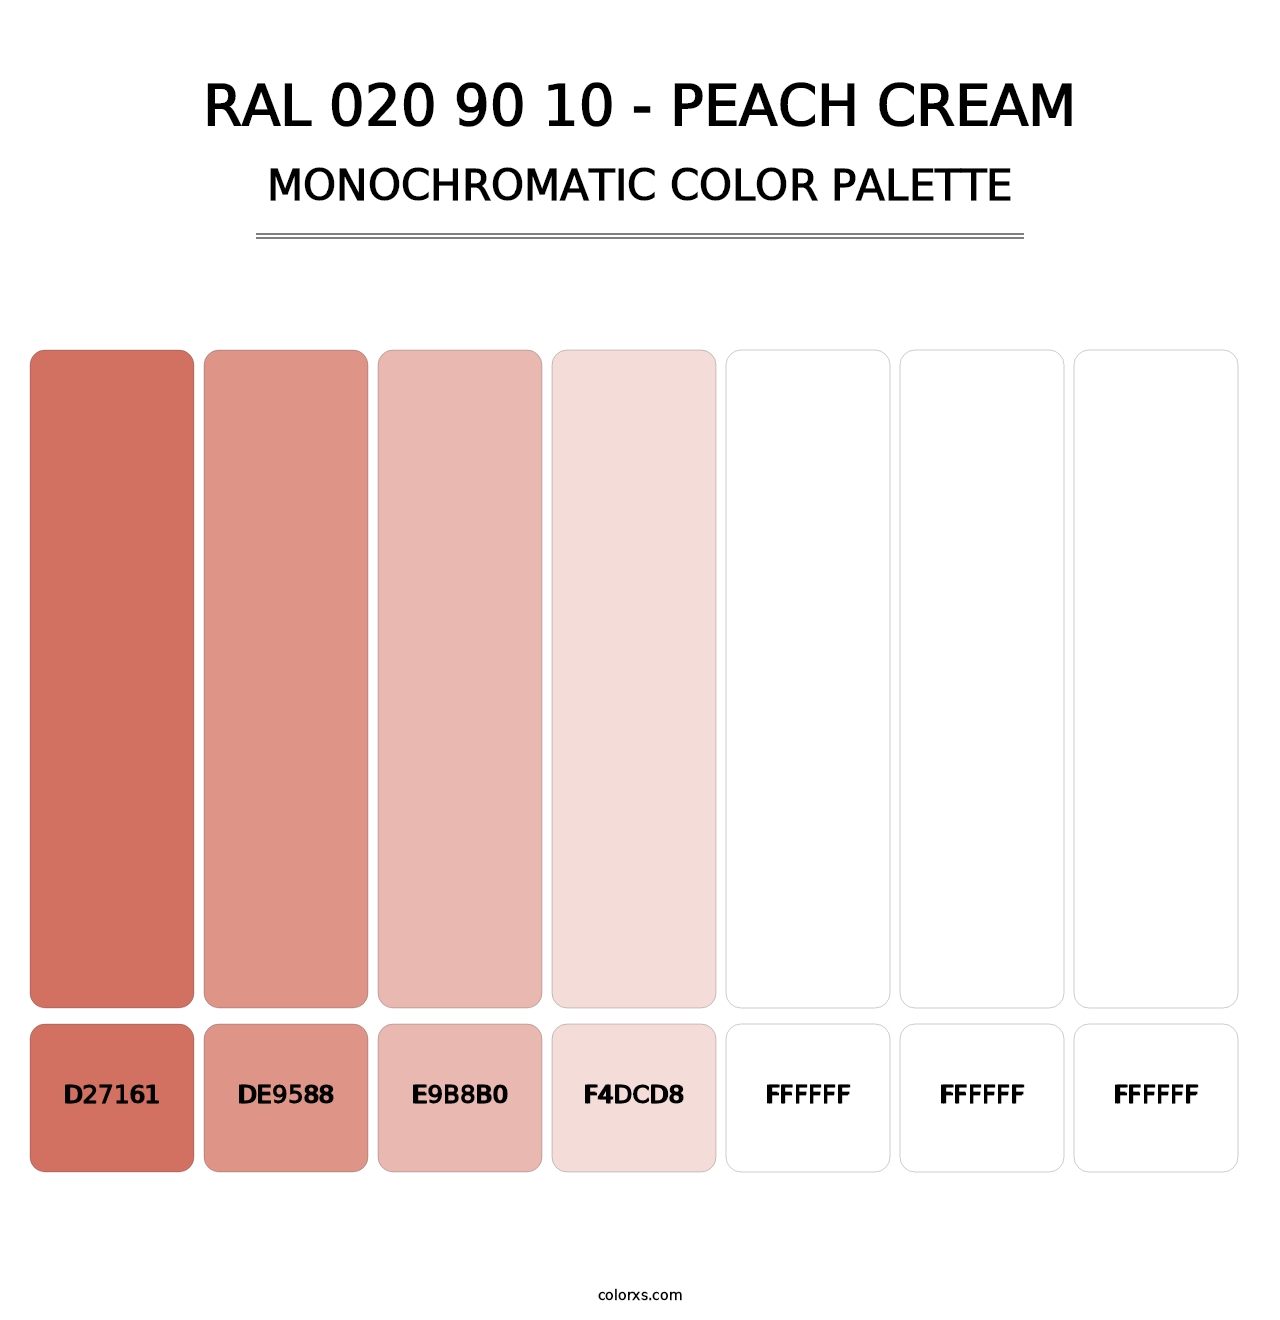 RAL 020 90 10 - Peach Cream - Monochromatic Color Palette